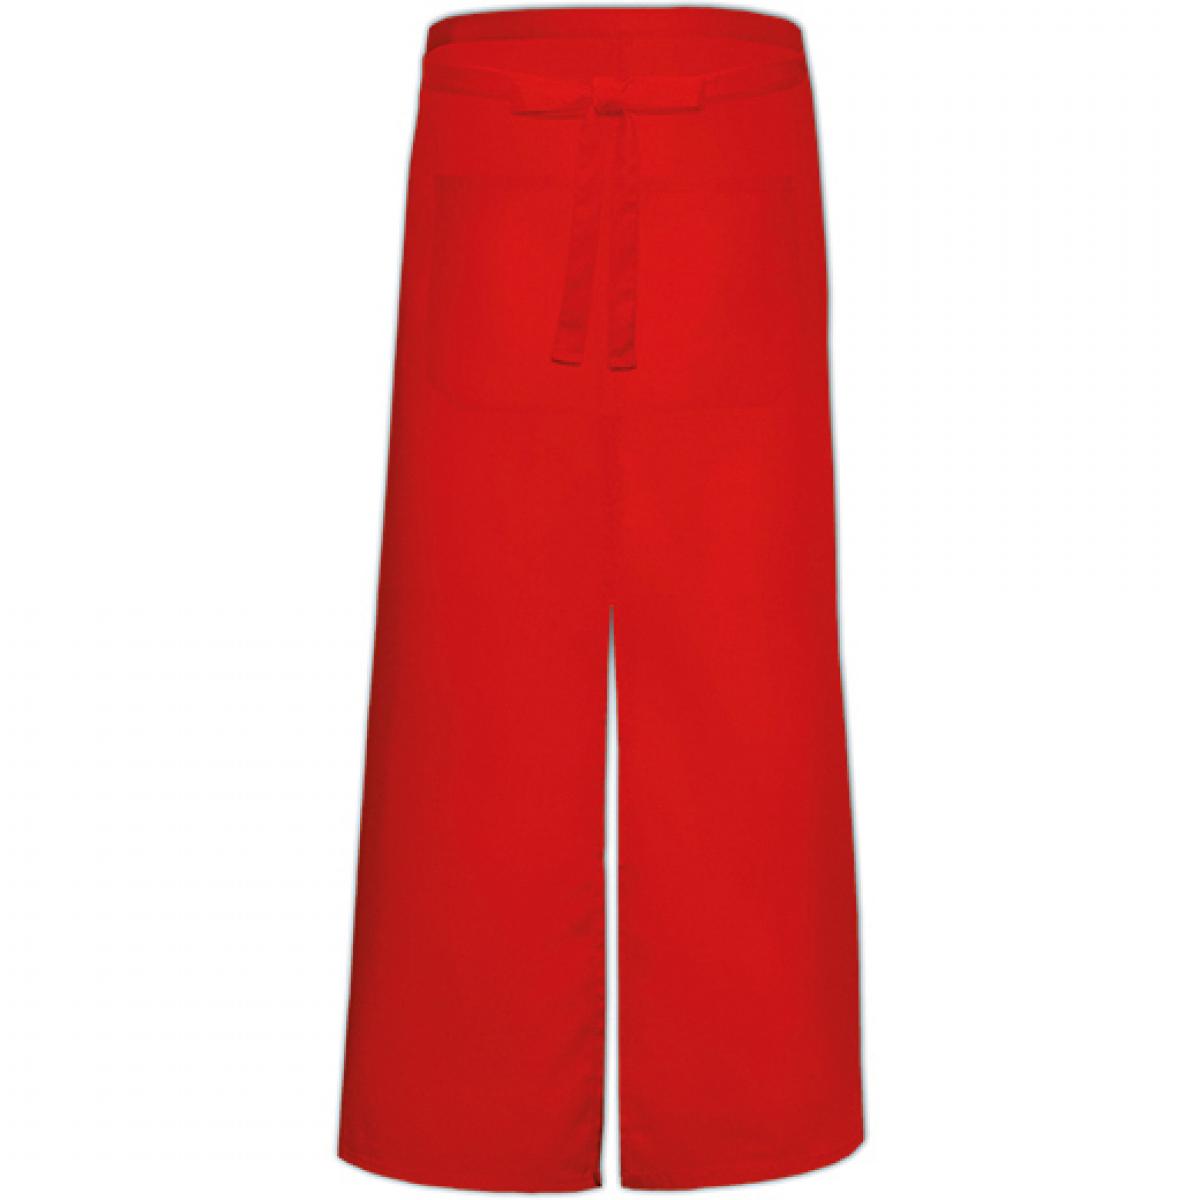 Hersteller: Link Kitchen Wear Herstellernummer: FS100100SP Z Artikelbezeichnung: Bistro Apron with Split and Front Pocket - 100 x 100 cm Farbe: Red